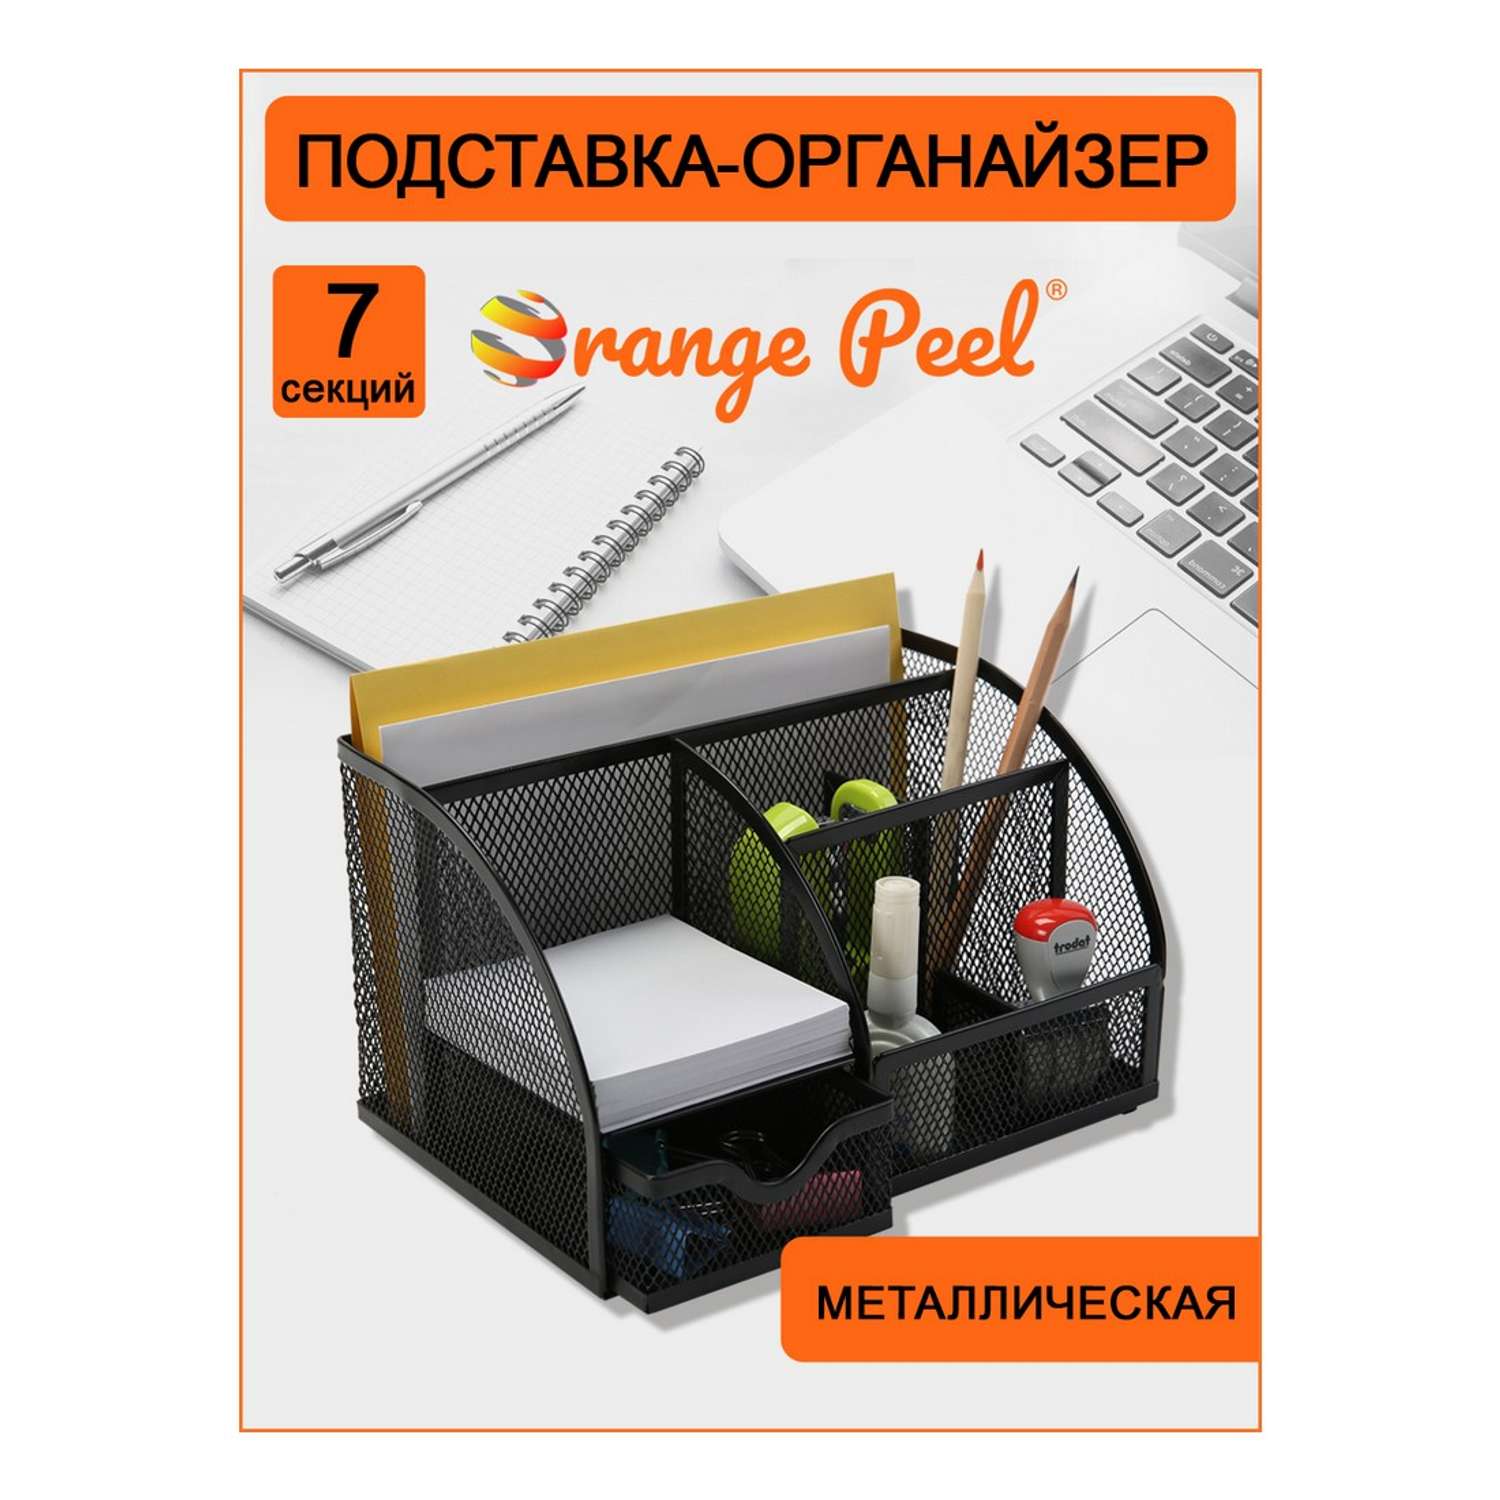 Подставка-органайзер Orange Peel для канцелярии металлическая черная. 7 секций - фото 2